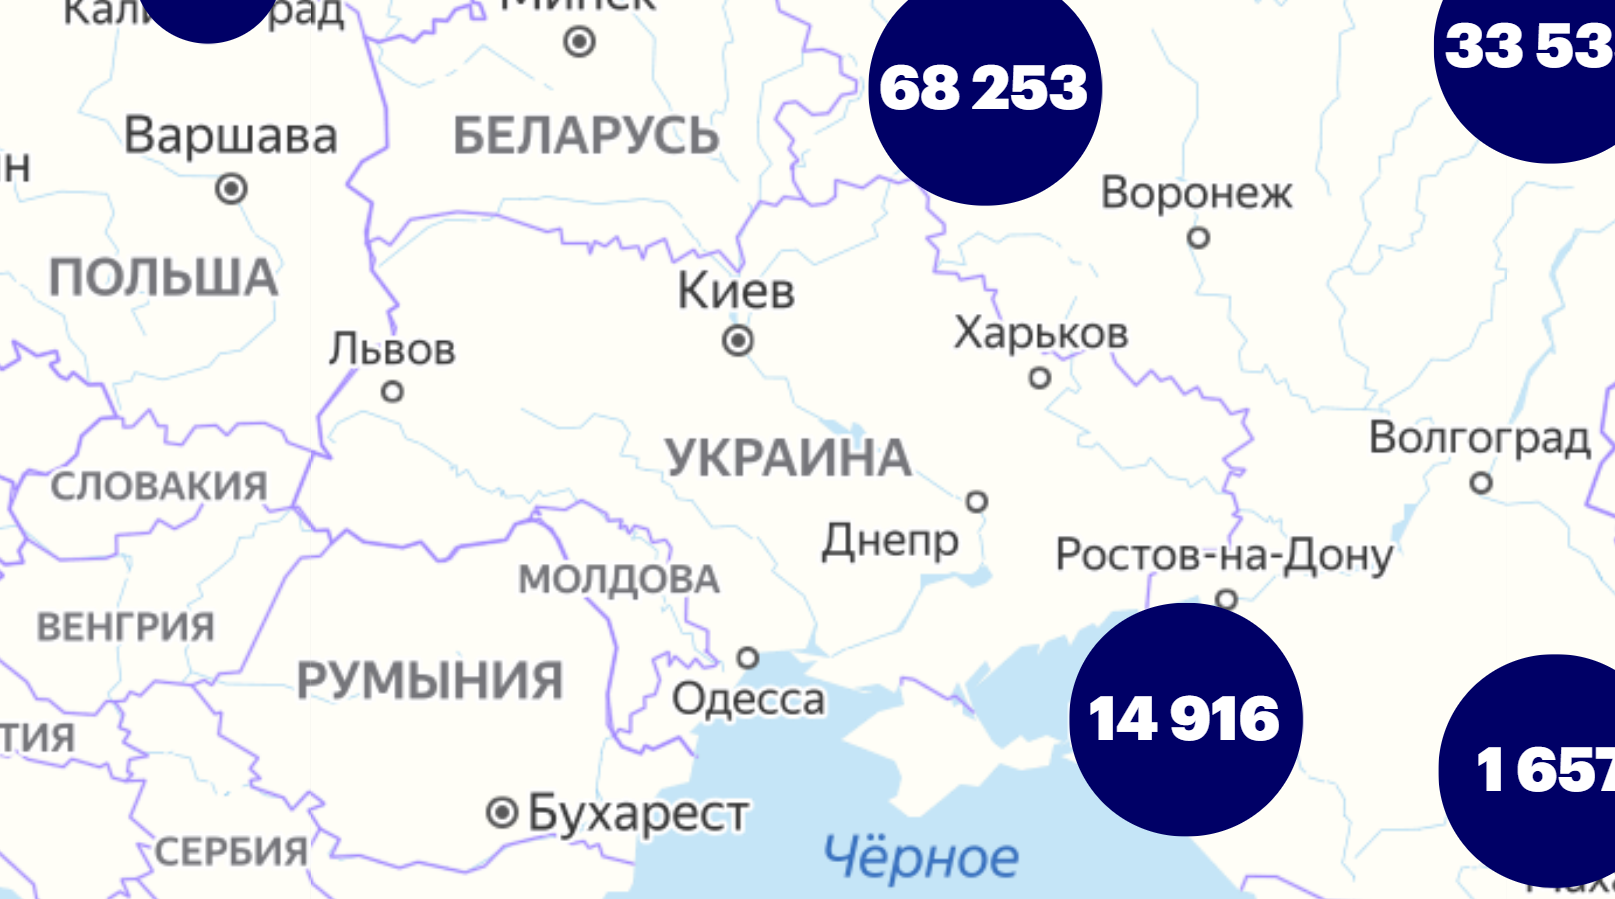 Карта на сайте Навального.